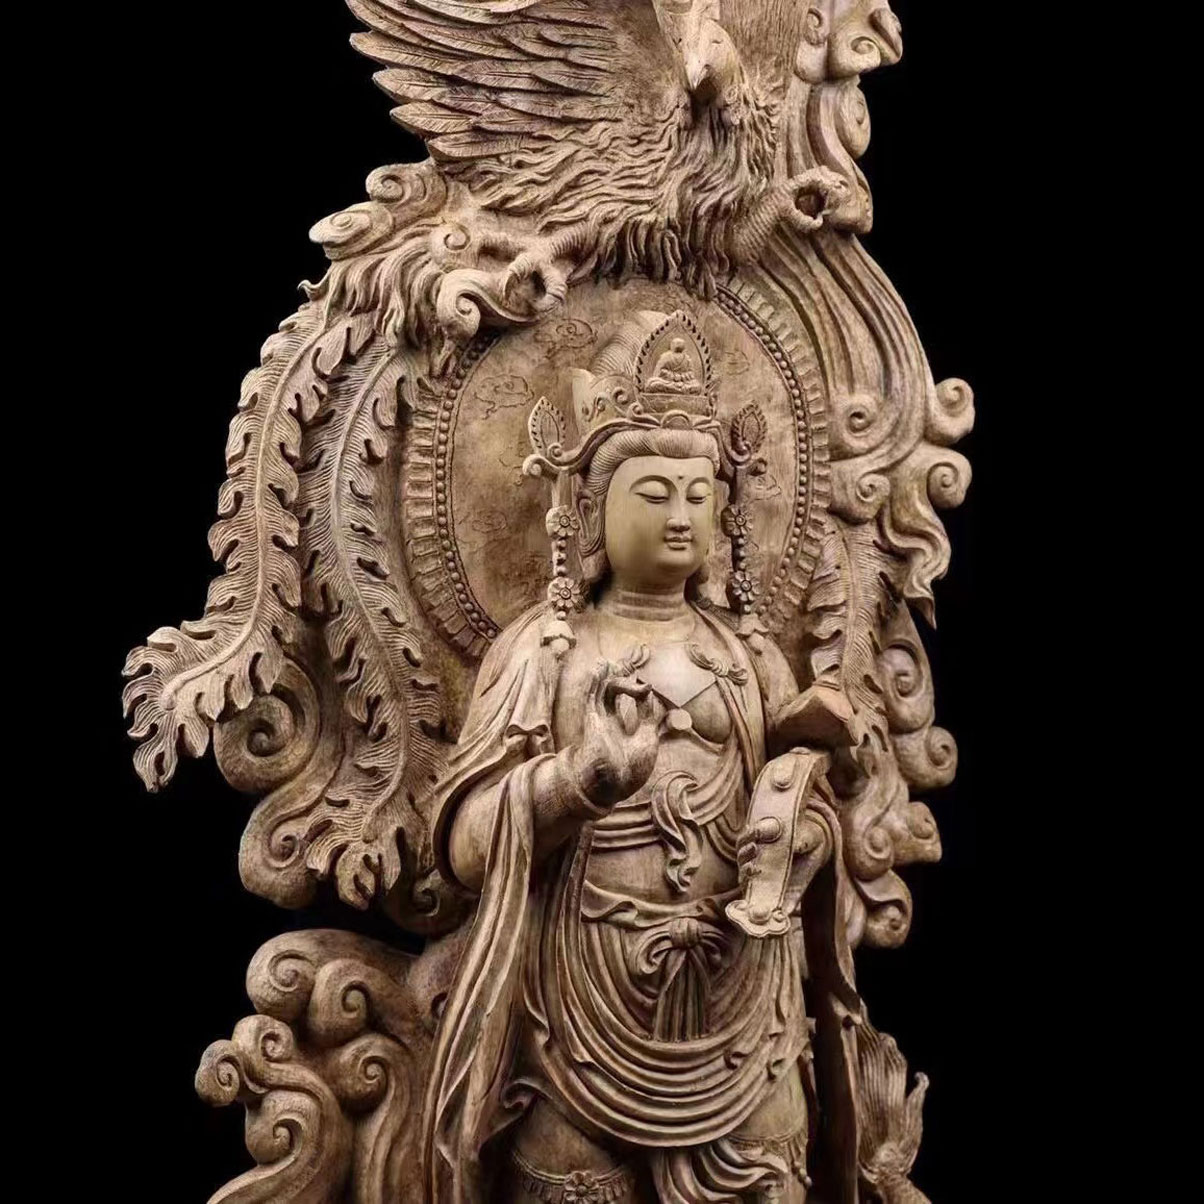 観音菩薩立像 龍 鳳 仏教美術 仏像 仏教工芸品 沈香 木彫り